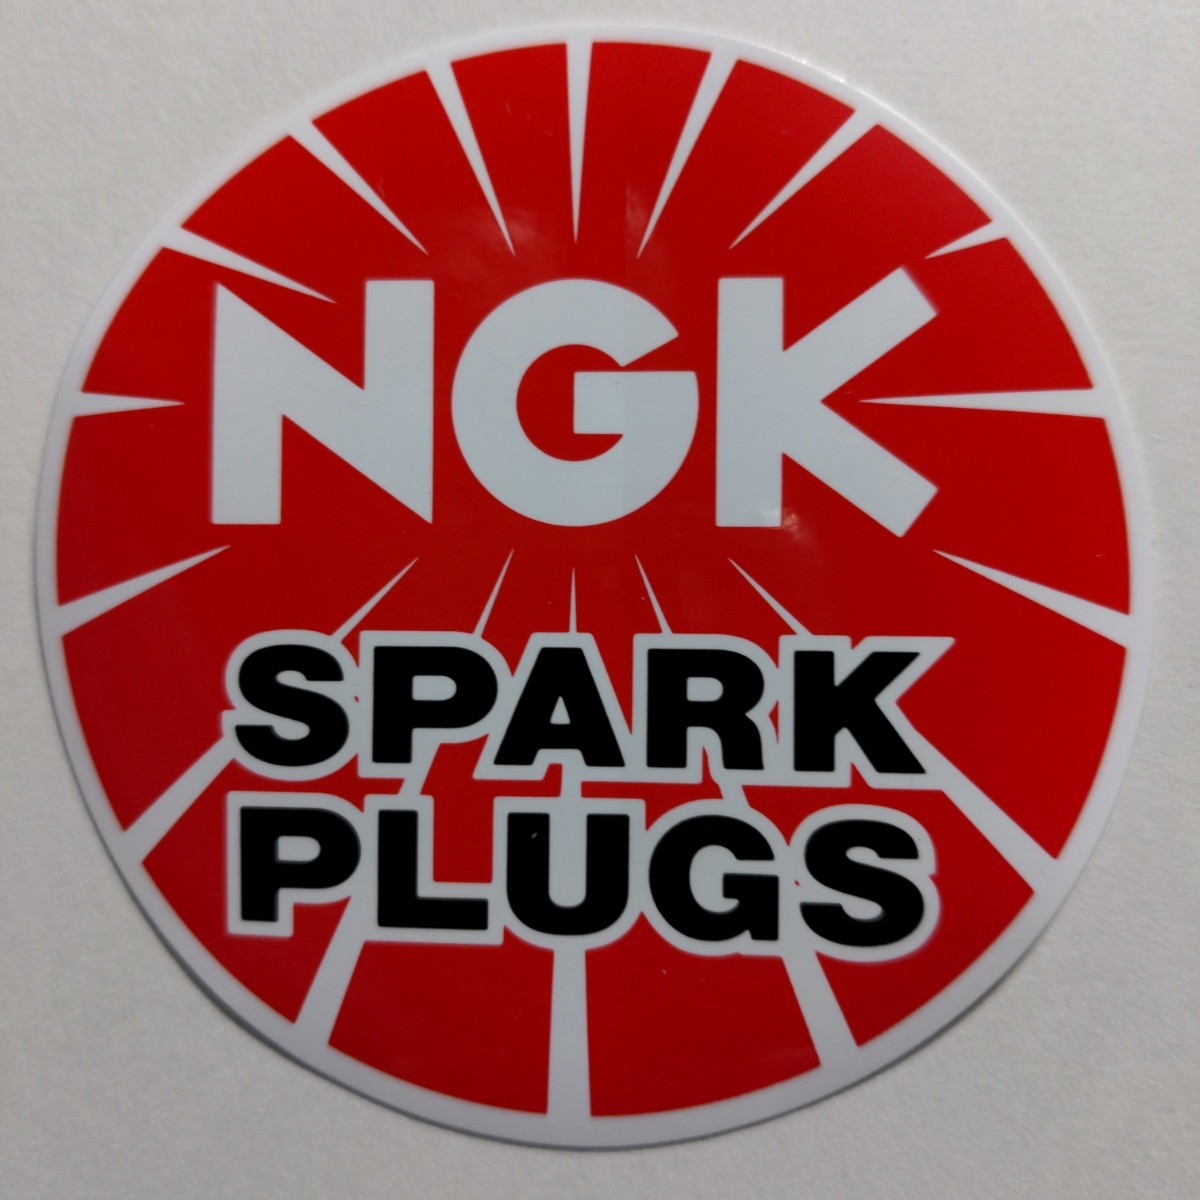 複数可 NGK スパークプラグ 丸形 9cm ステッカー NGK SPARK PLUGSの画像1